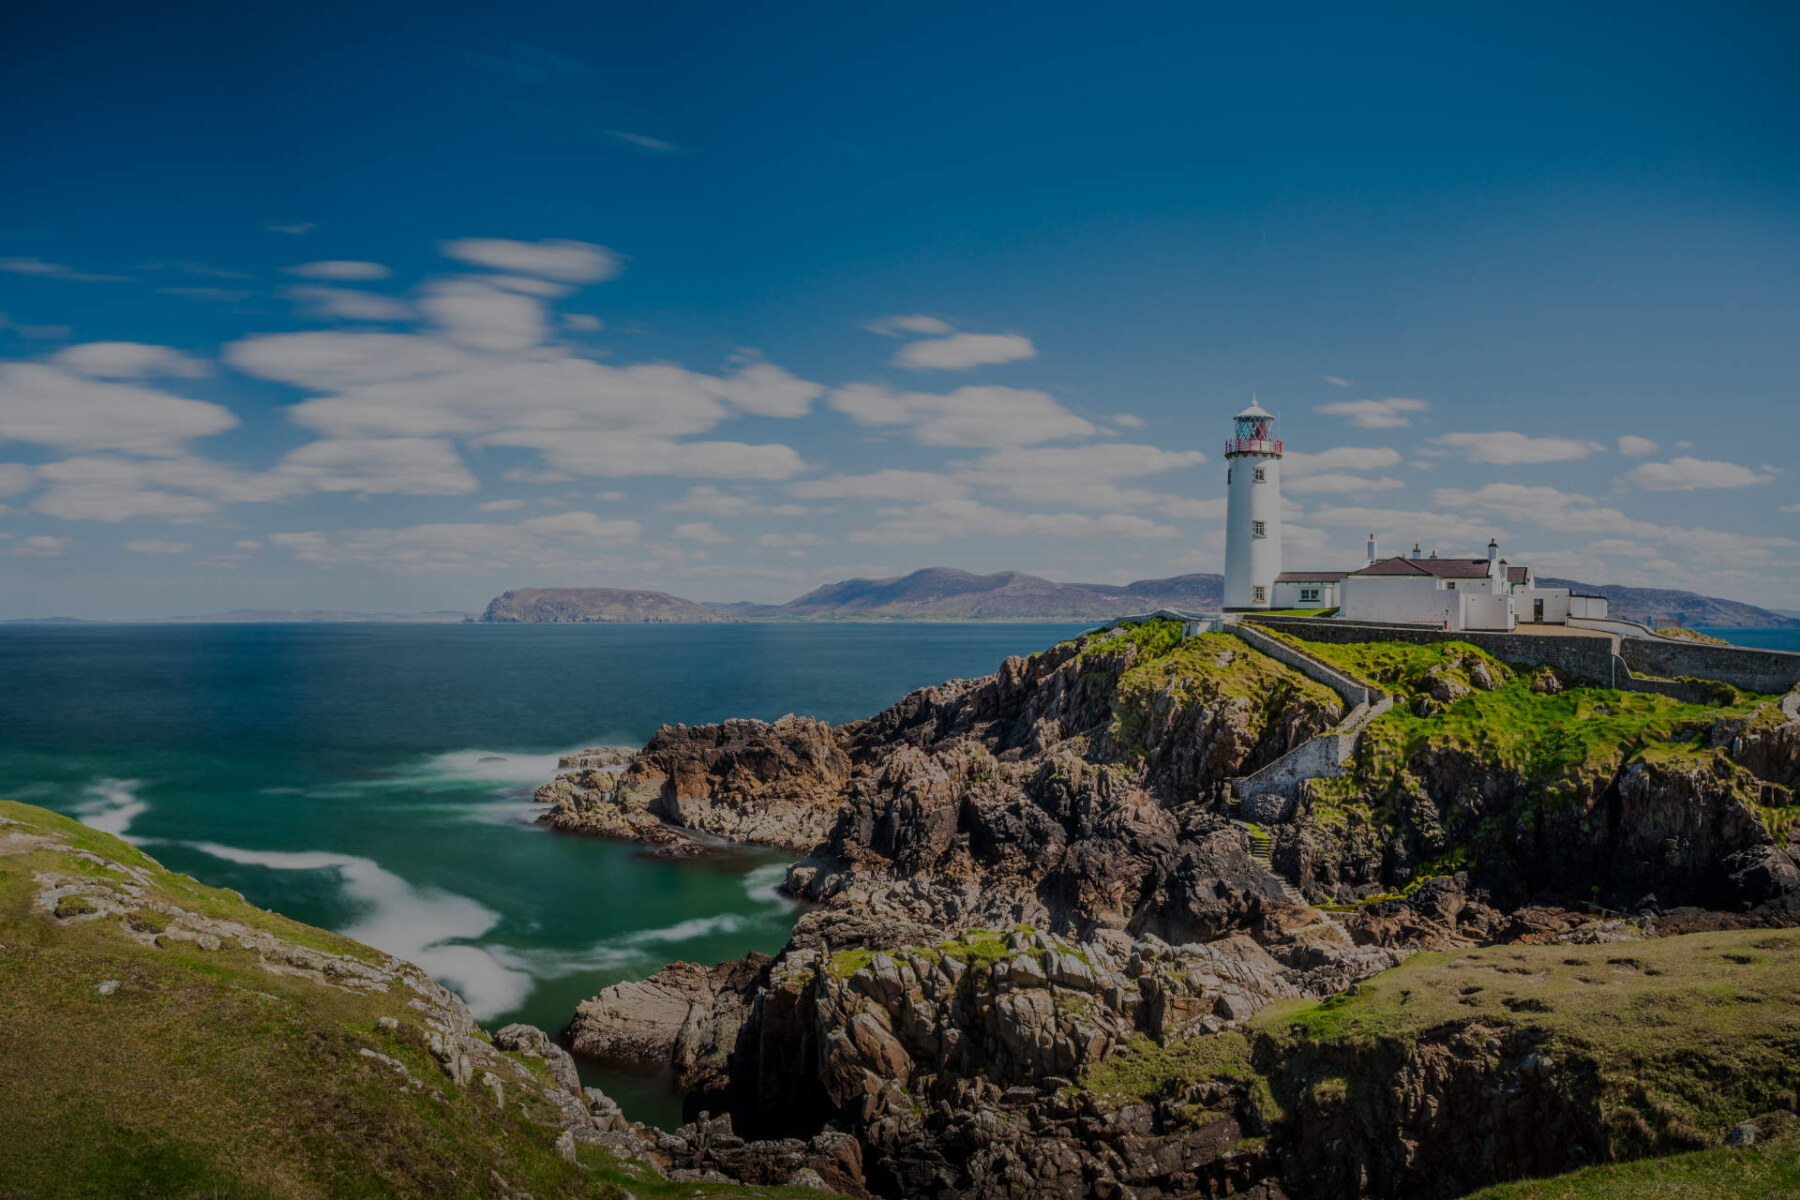 Ireland Lighthouse in Ireland Sea